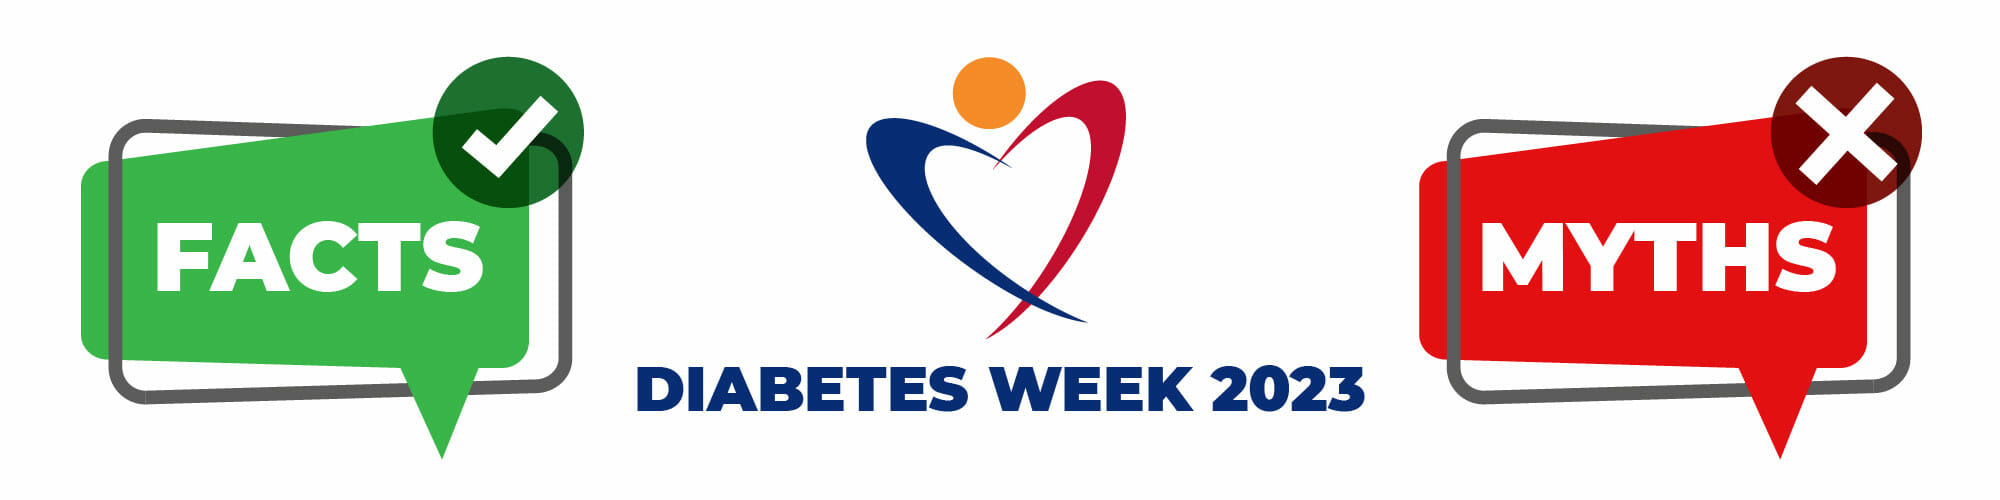 Diabetes Week - facts myths header